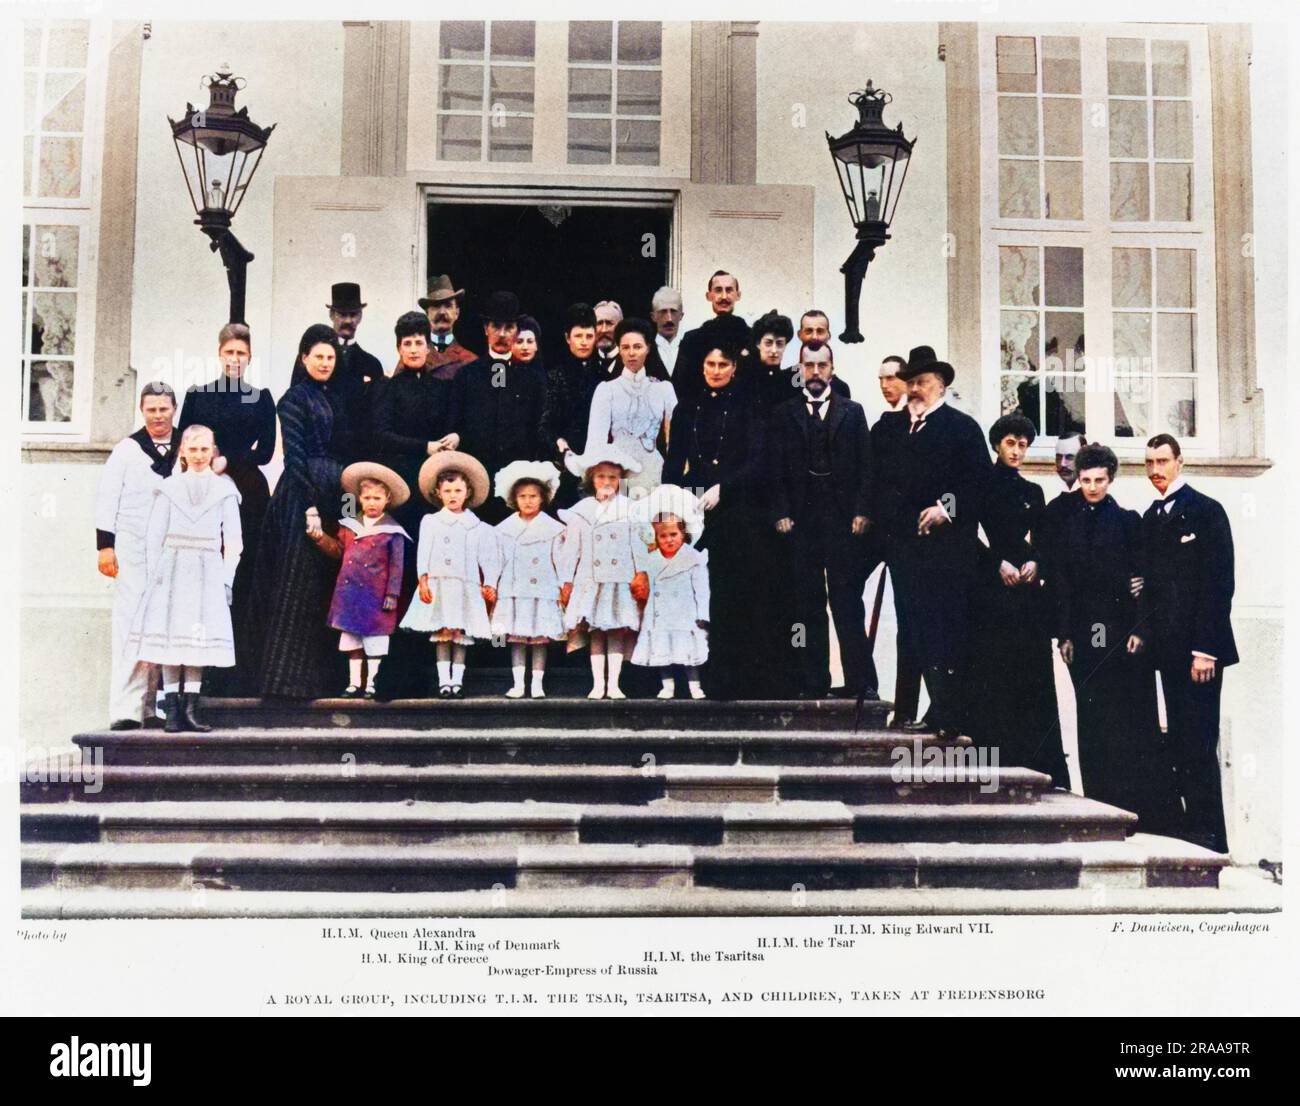 Palais de Fredensborg sur l'île de la Zélande au Danemark - Nicolas II - Tsar de Russie a photographié les épouses, la famille et d'autres royalties européennes, y compris: Le roi Edouard VII, le roi George I de Grèce et le roi Frédéric VIII du Danemark. Date: 1902 Banque D'Images